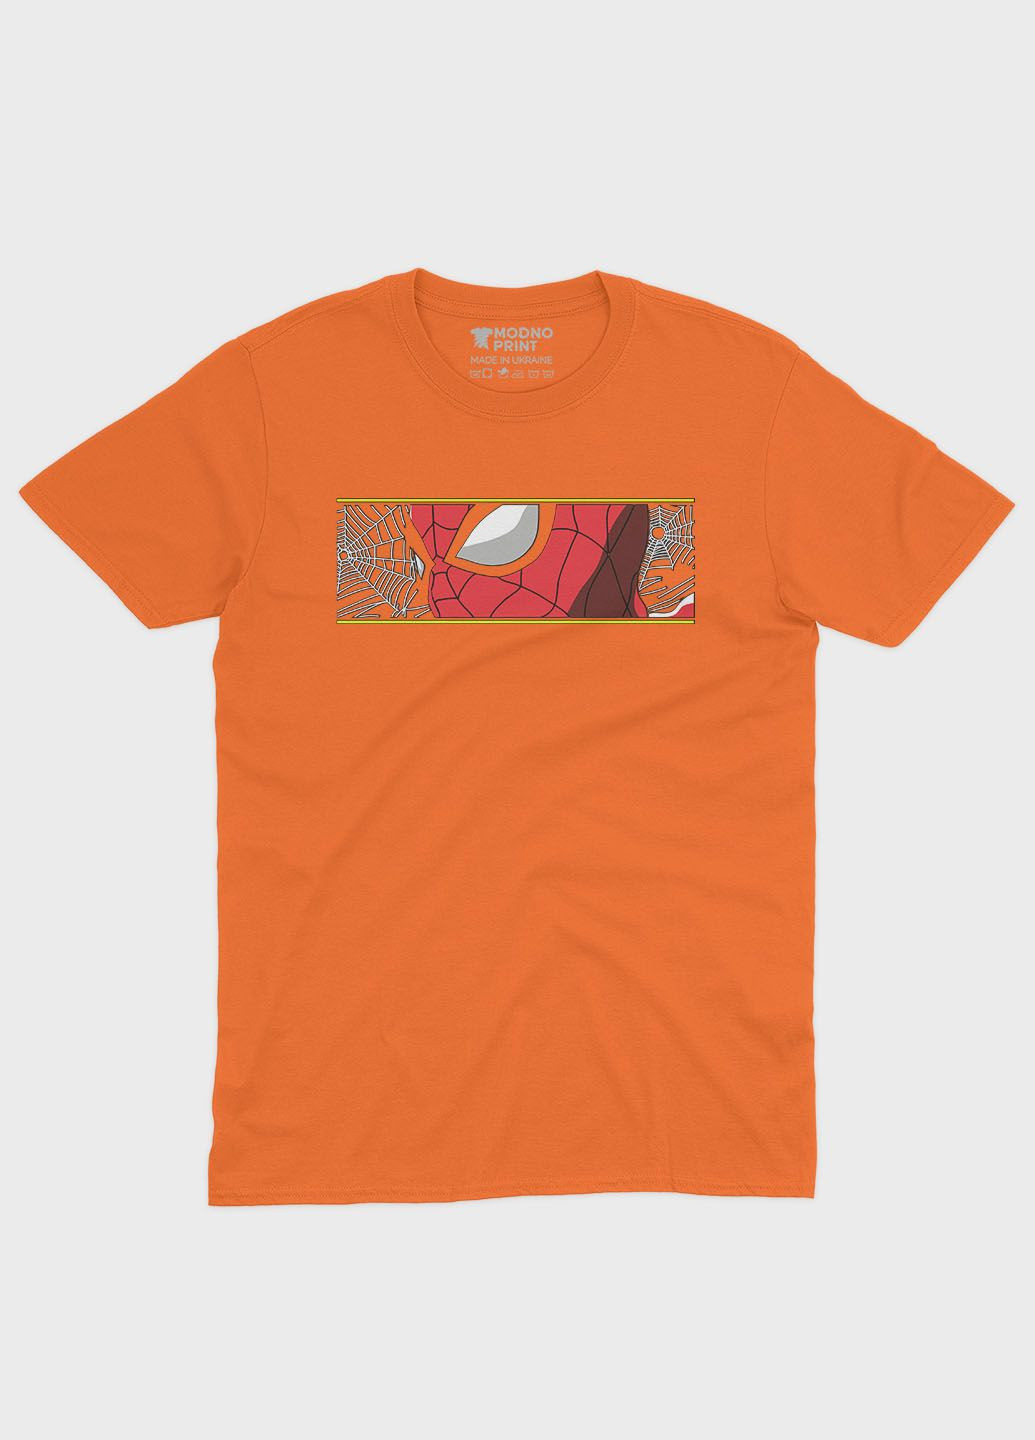 Помаранчева демісезонна футболка для хлопчика з принтом супергероя - людина-павук (ts001-1-ora-006-014-008-b) Modno